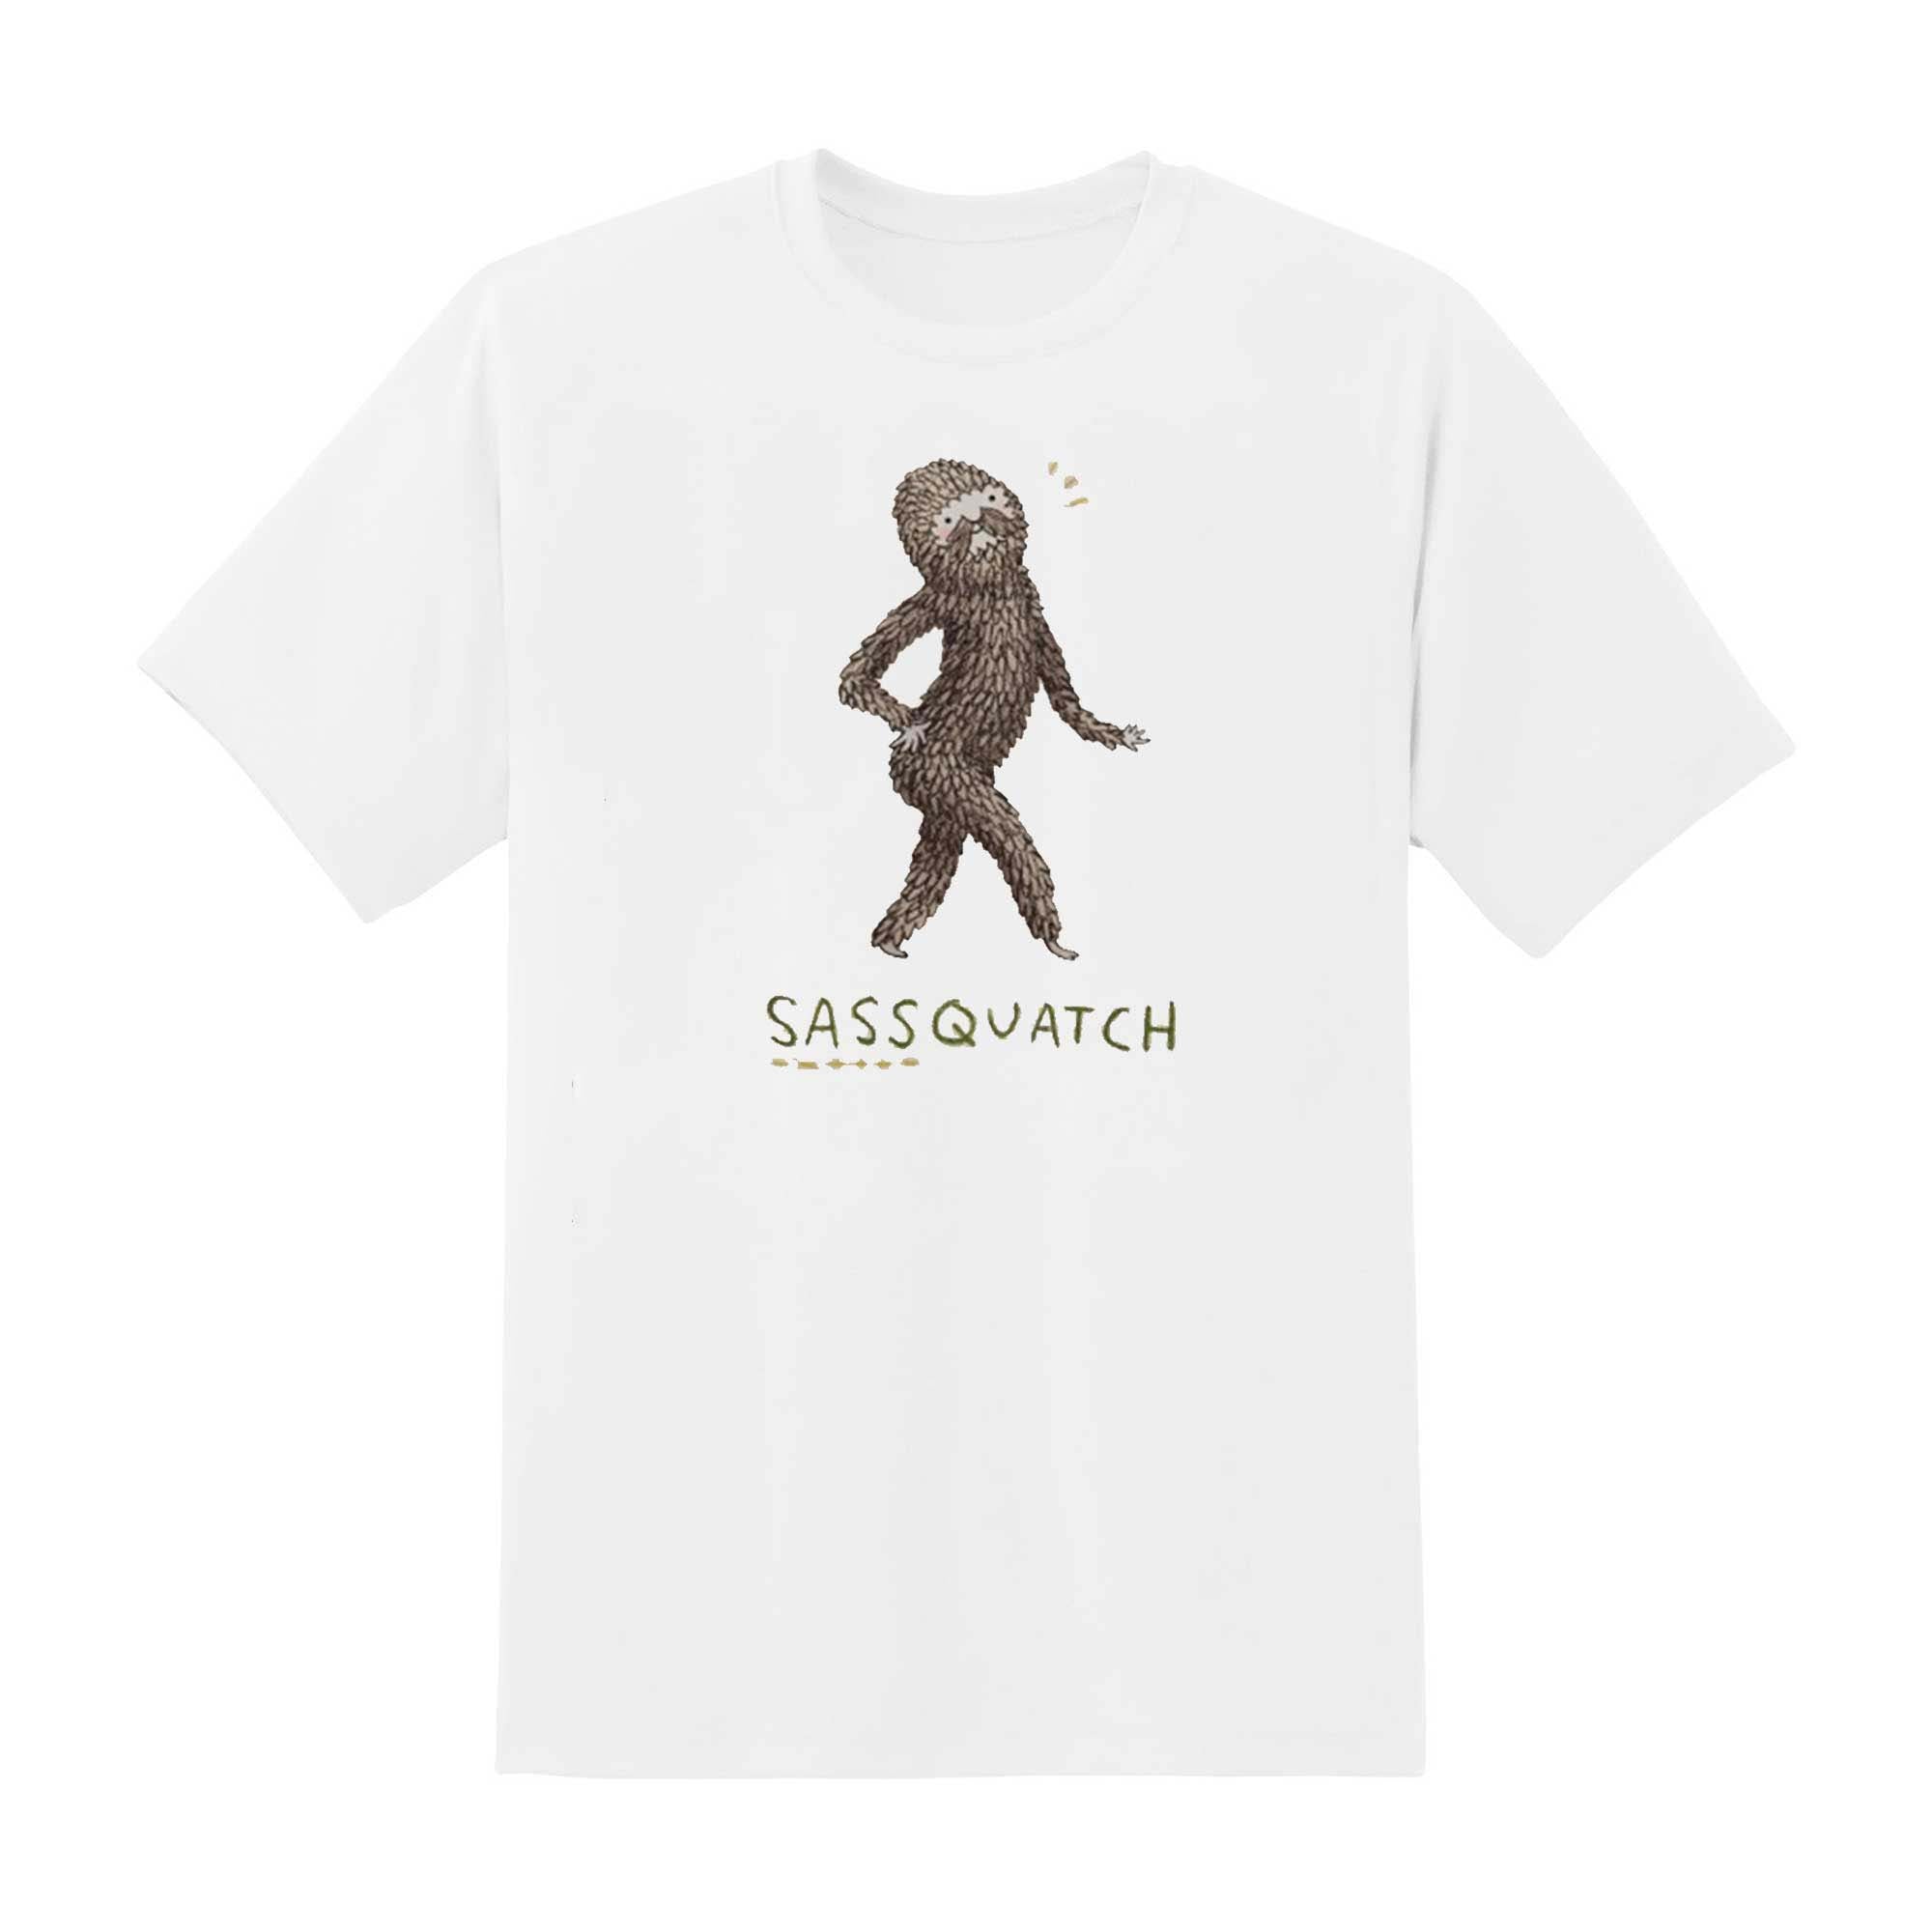 Skitongift Skitongift Sassquatch Classic T Shirt Funny Shirts